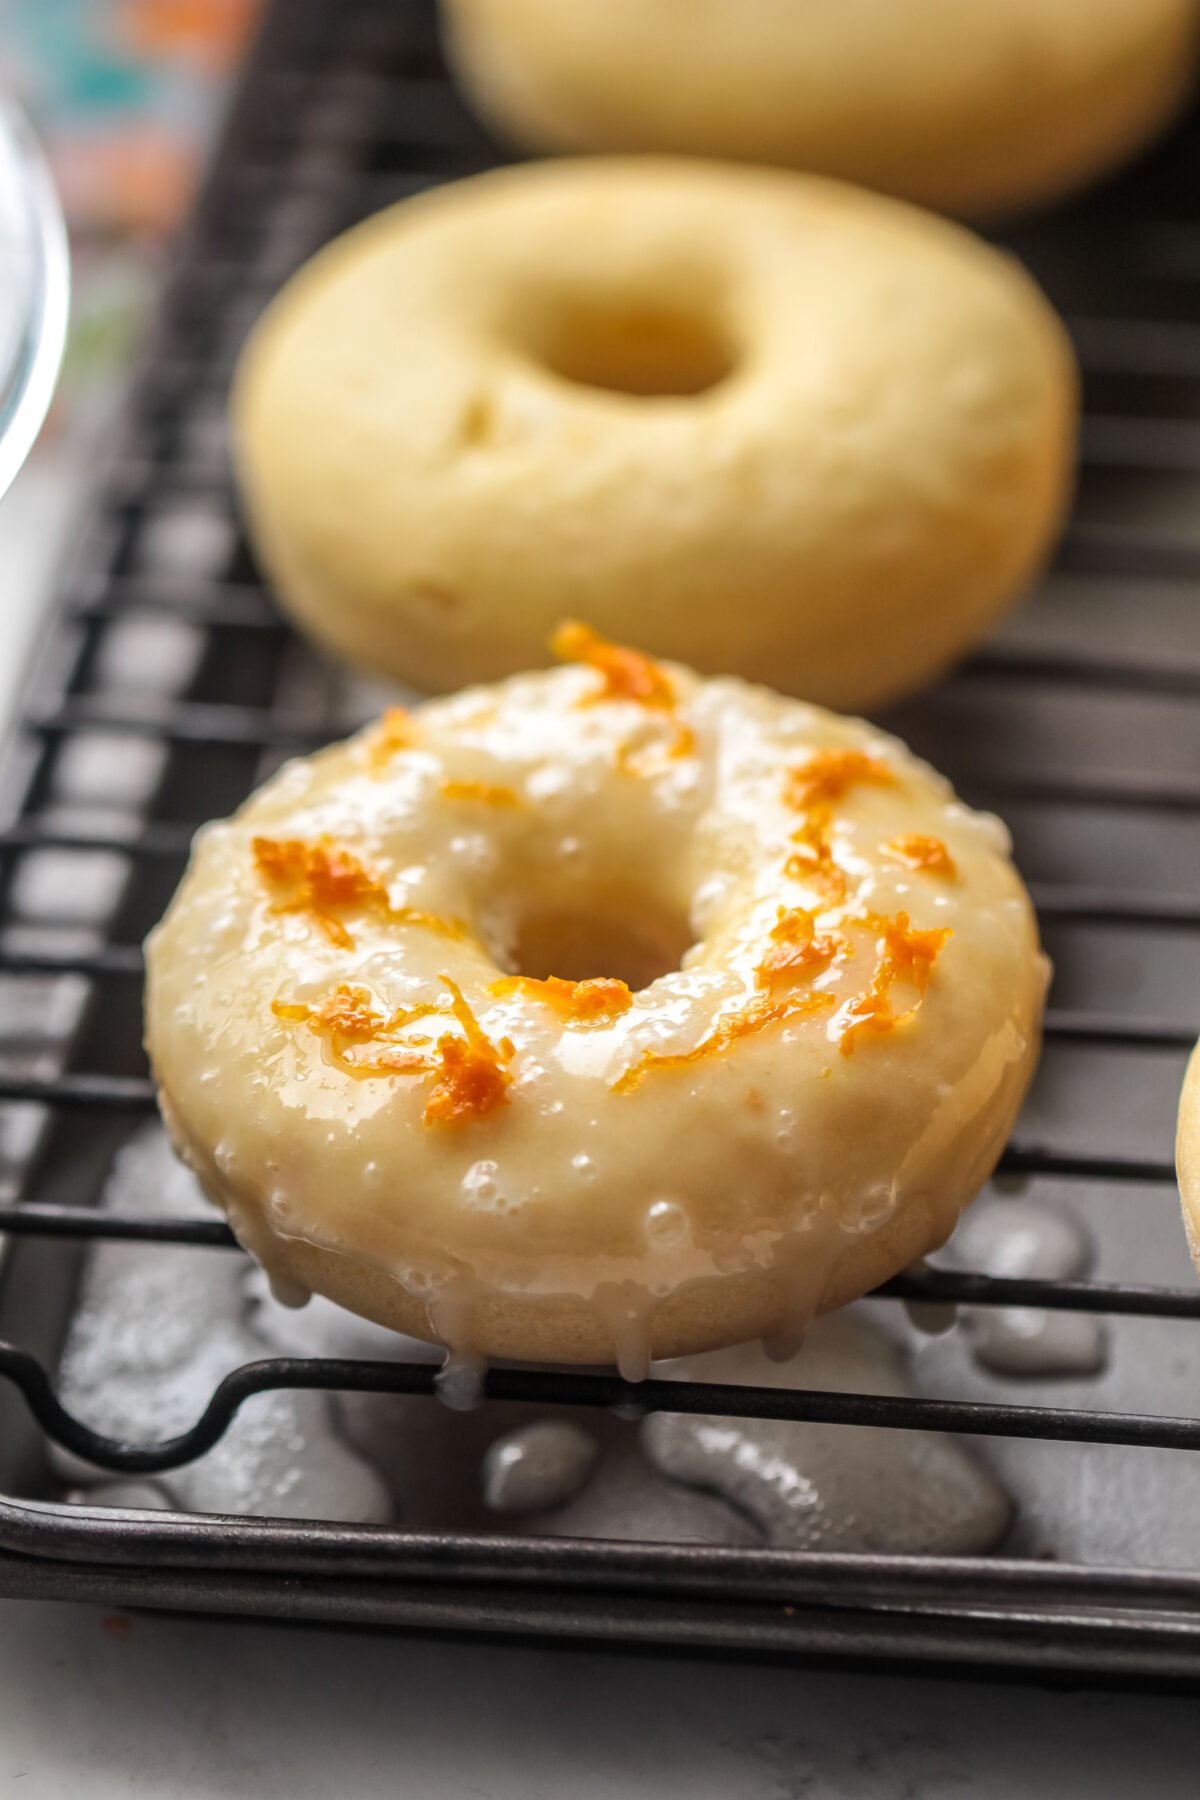 Zest sprinkled over the glaze of an orange donut.